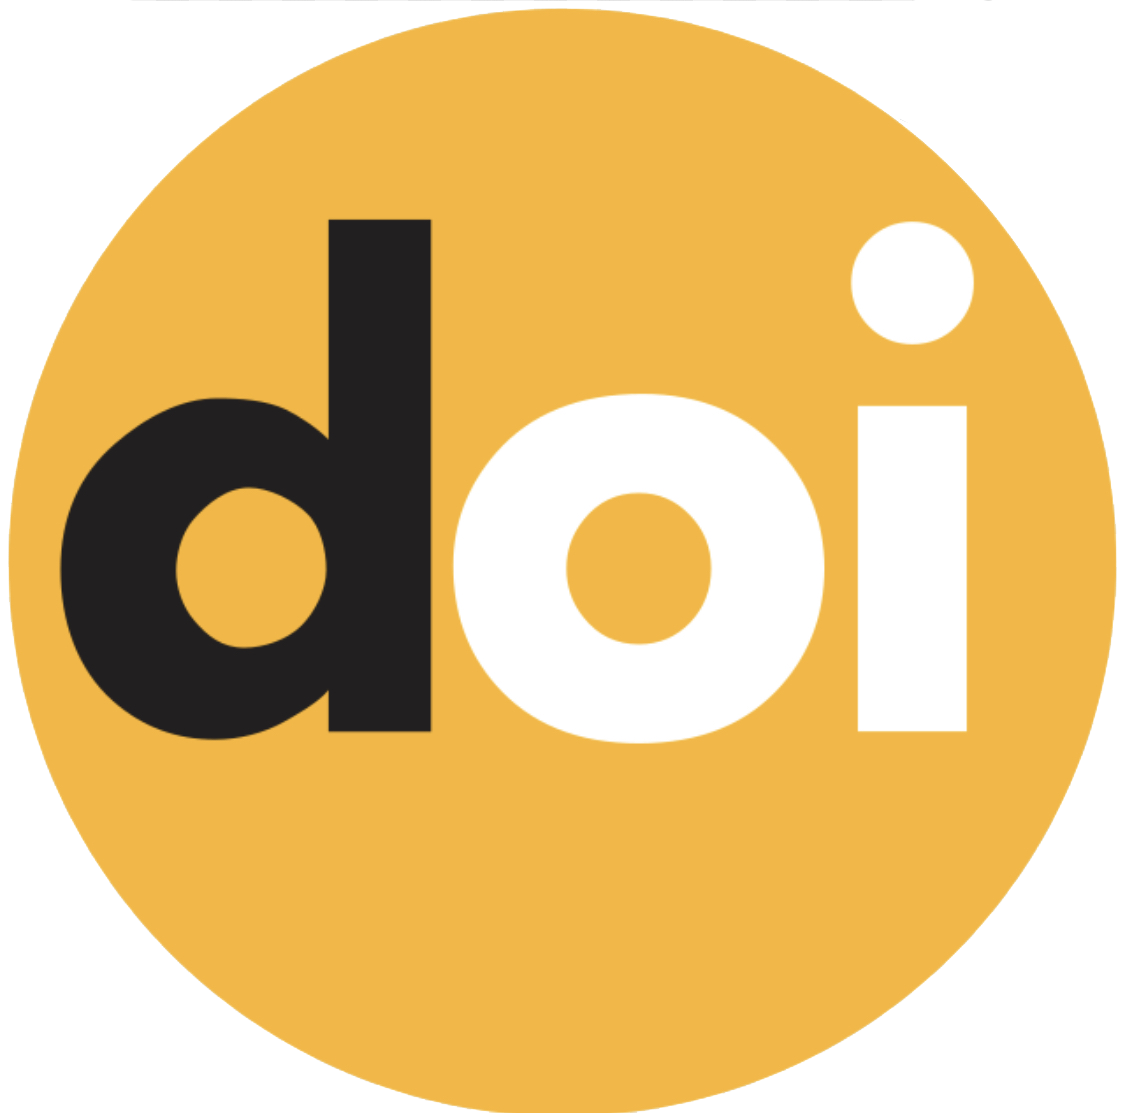 doi logo